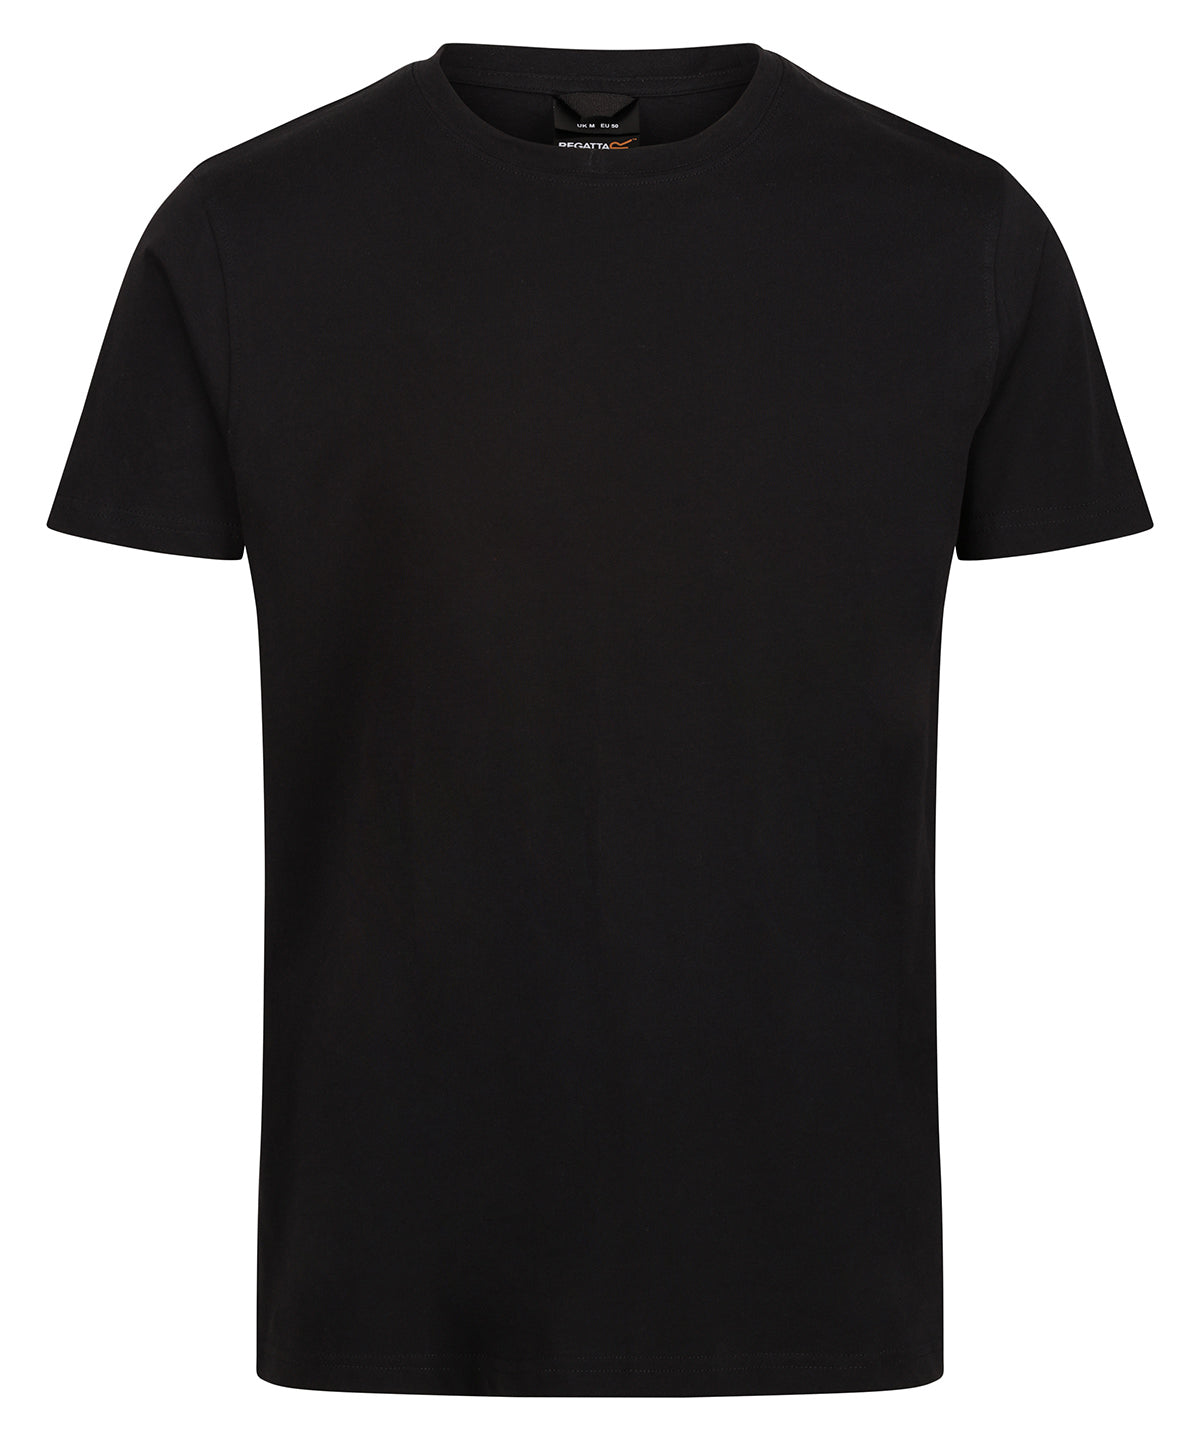 Pro soft-touch cotton t-shirt | Black